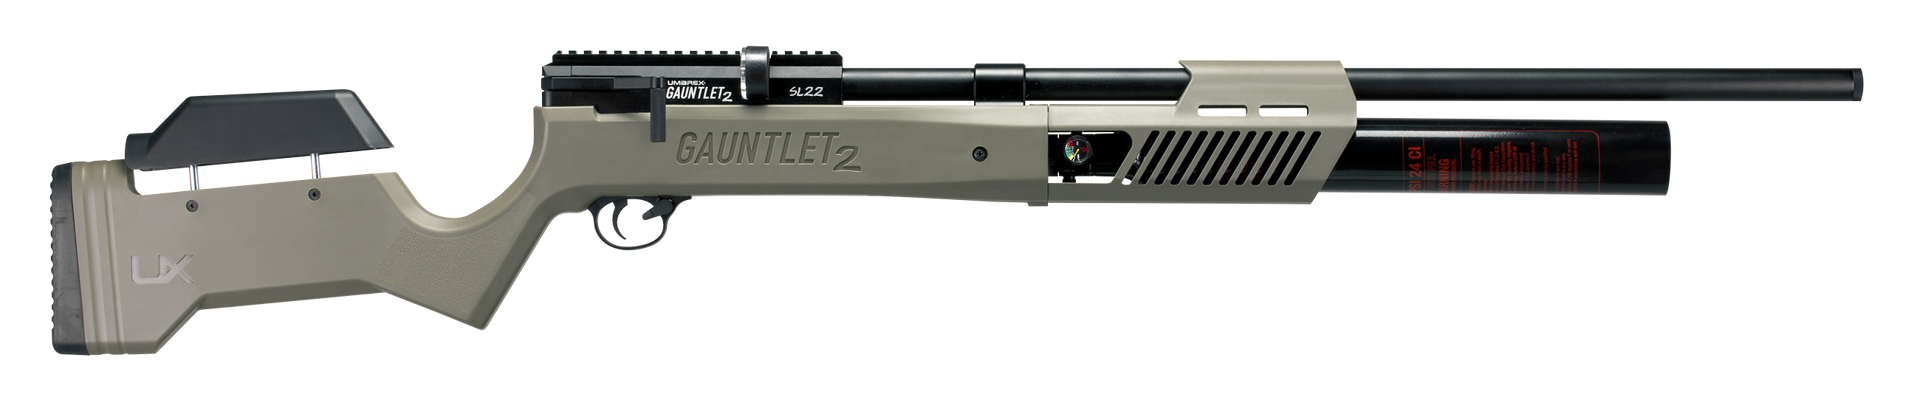 UMAREX GAUNTLET 2 SL22 - Airguns